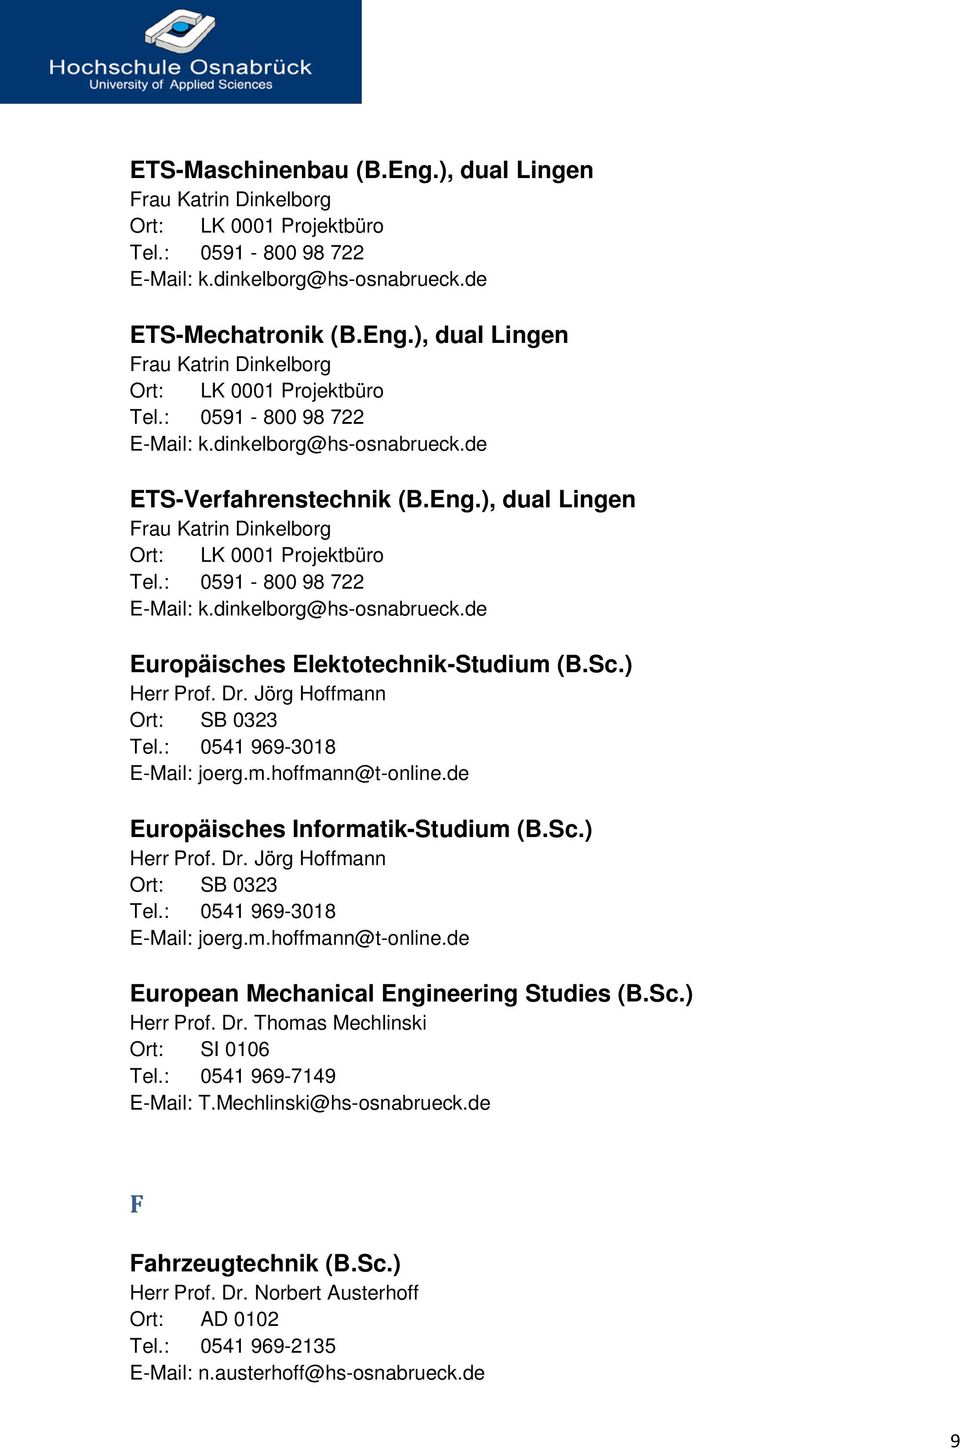 Jörg Hoffmann Ort: SB 0323 Tel.: 0541 969-3018 E-Mail: joerg.m.hoffmann@t-online.de Europäisches Informatik-Studium (B.Sc.) Herr Prof. Dr. Jörg Hoffmann Ort: SB 0323 Tel.: 0541 969-3018 E-Mail: joerg.m.hoffmann@t-online.de European Mechanical Engineering Studies (B.